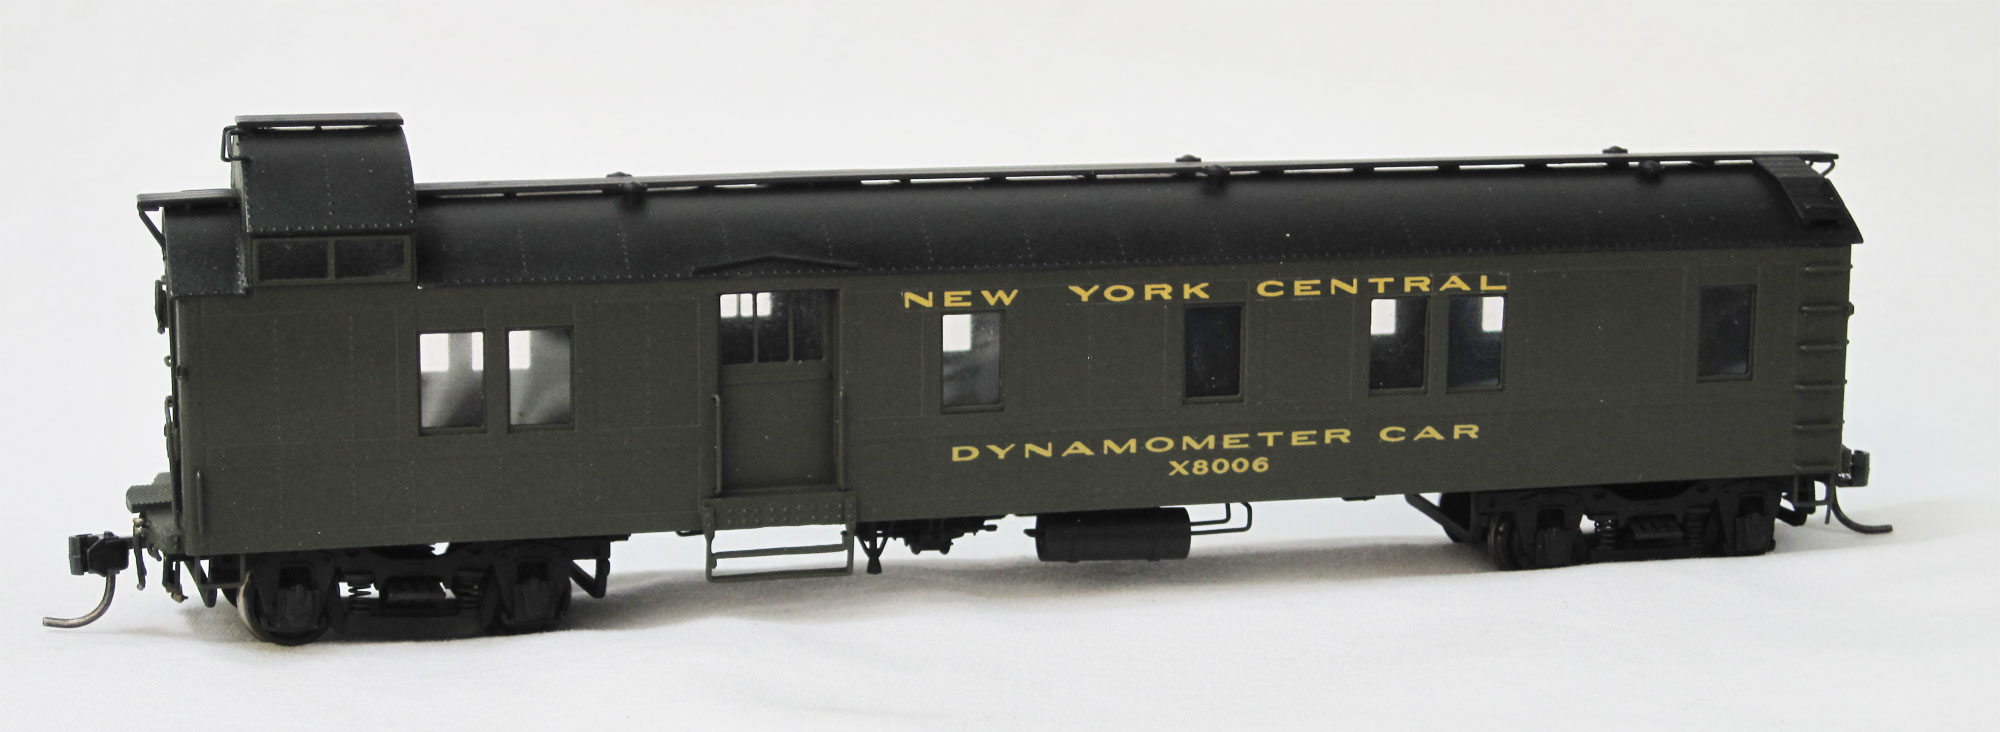 NYC Dynomometer Car #X8006